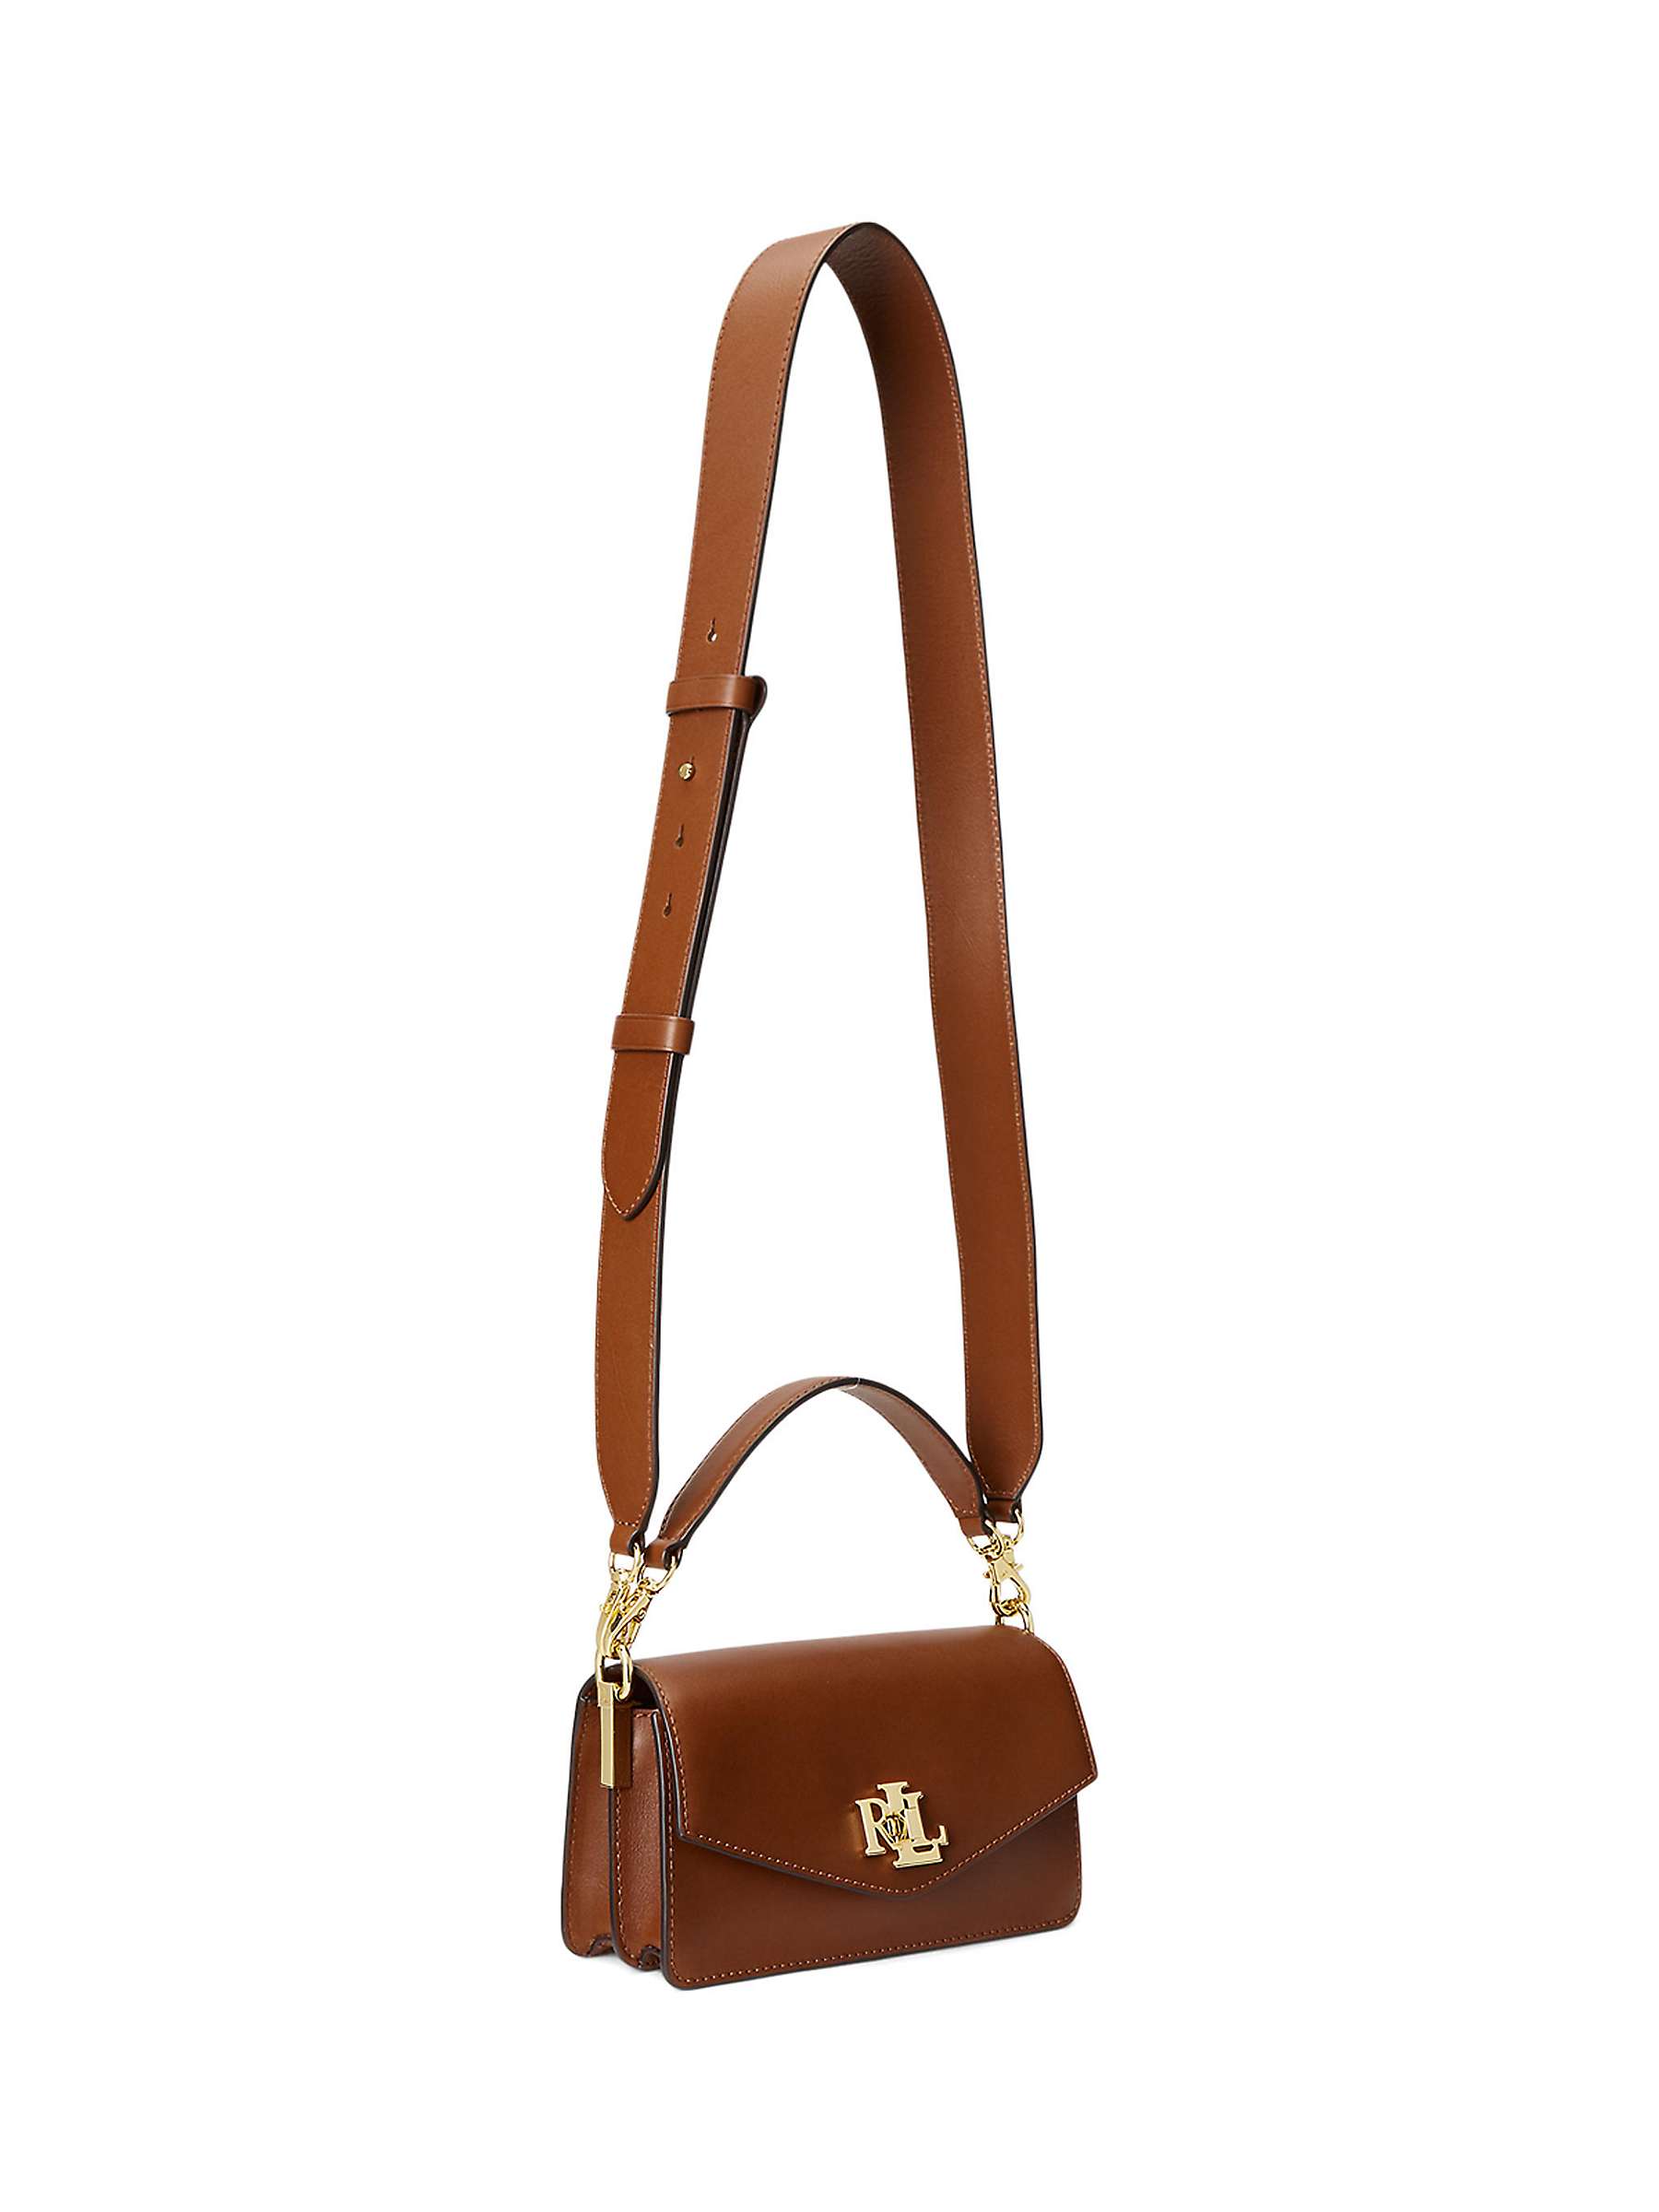 Buy Lauren Ralph Lauren Tayler 19 Leather Grab Bag Online at johnlewis.com